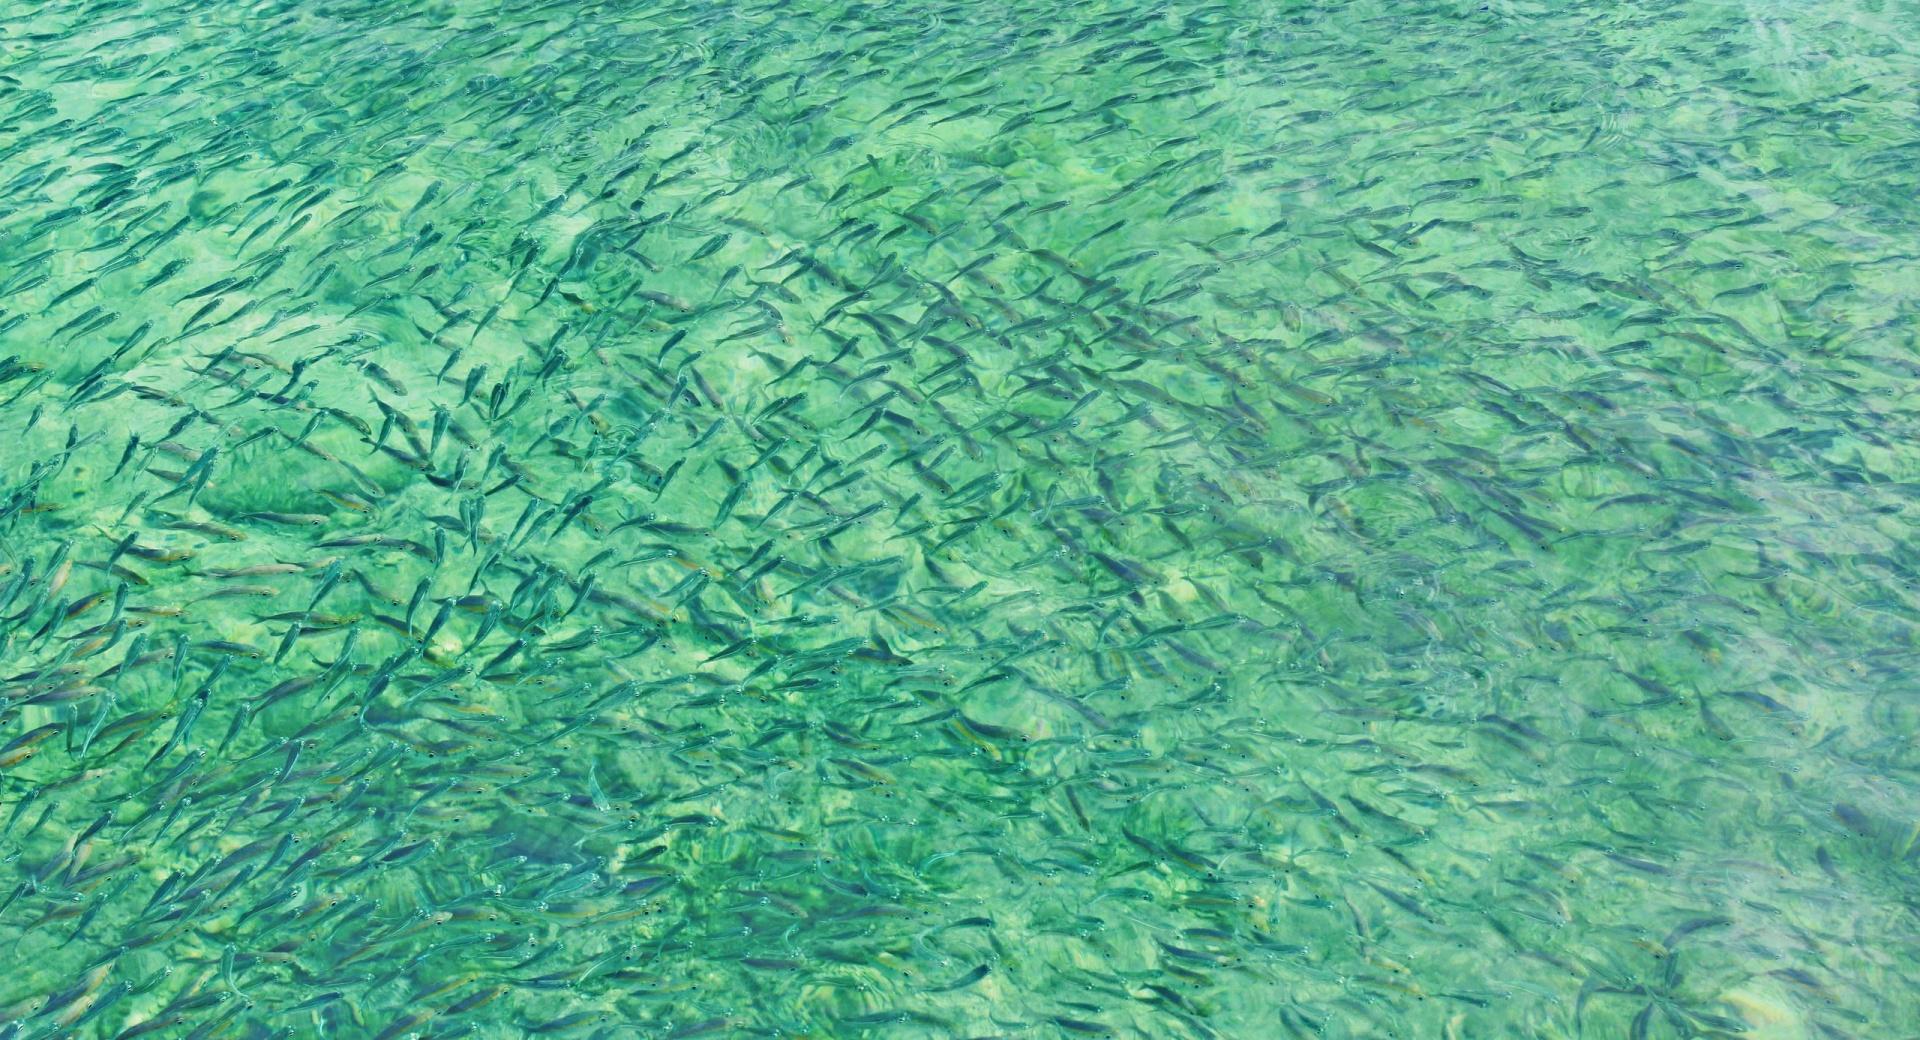 Ikan Ikan Kecil at 1280 x 960 size wallpapers HD quality